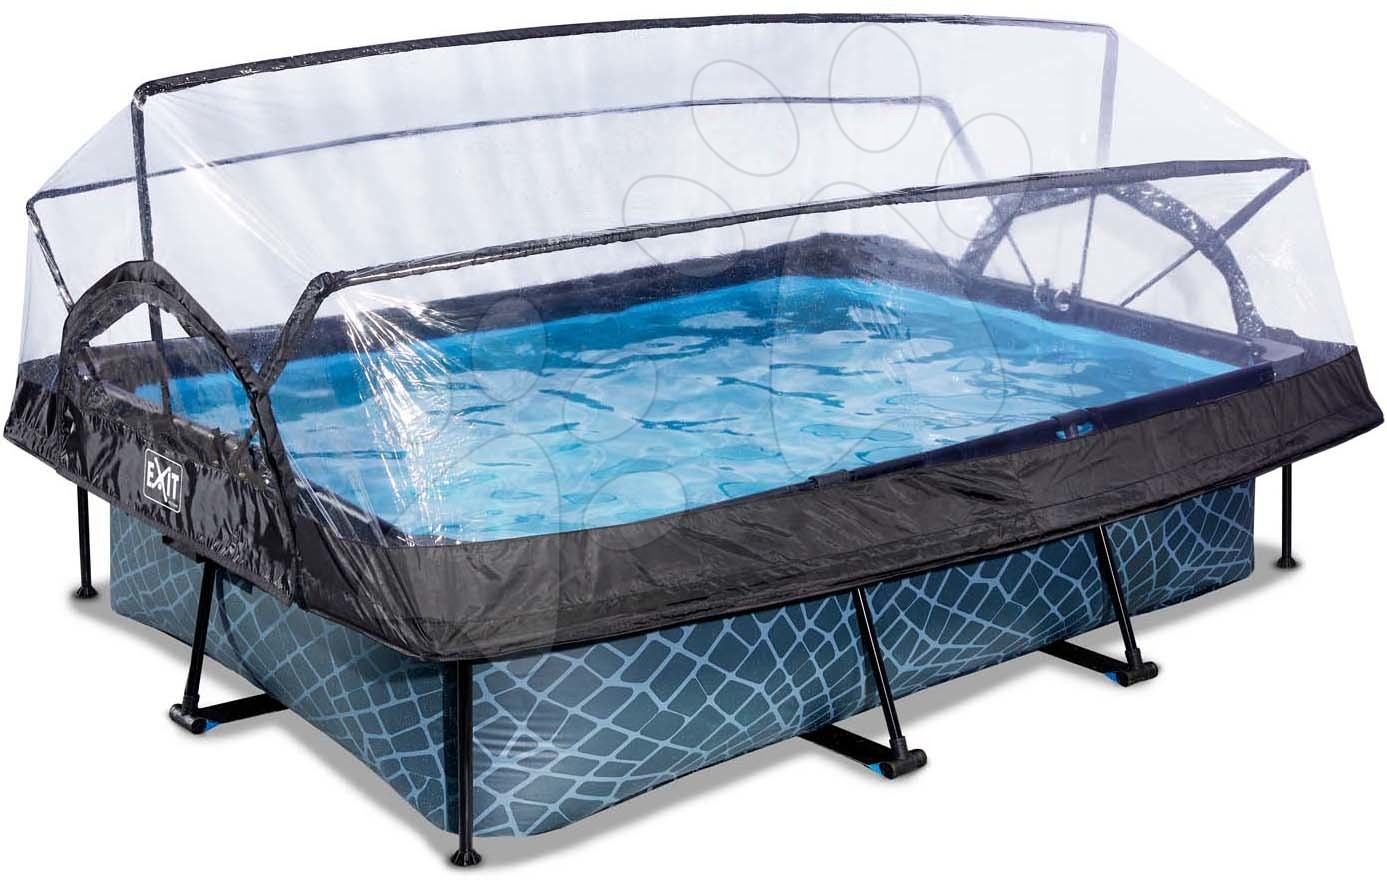 Bazén s krytom a filtráciou Stone pool Exit Toys oceľová konštrukcia 220*150*65 cm šedý od 6 rokov